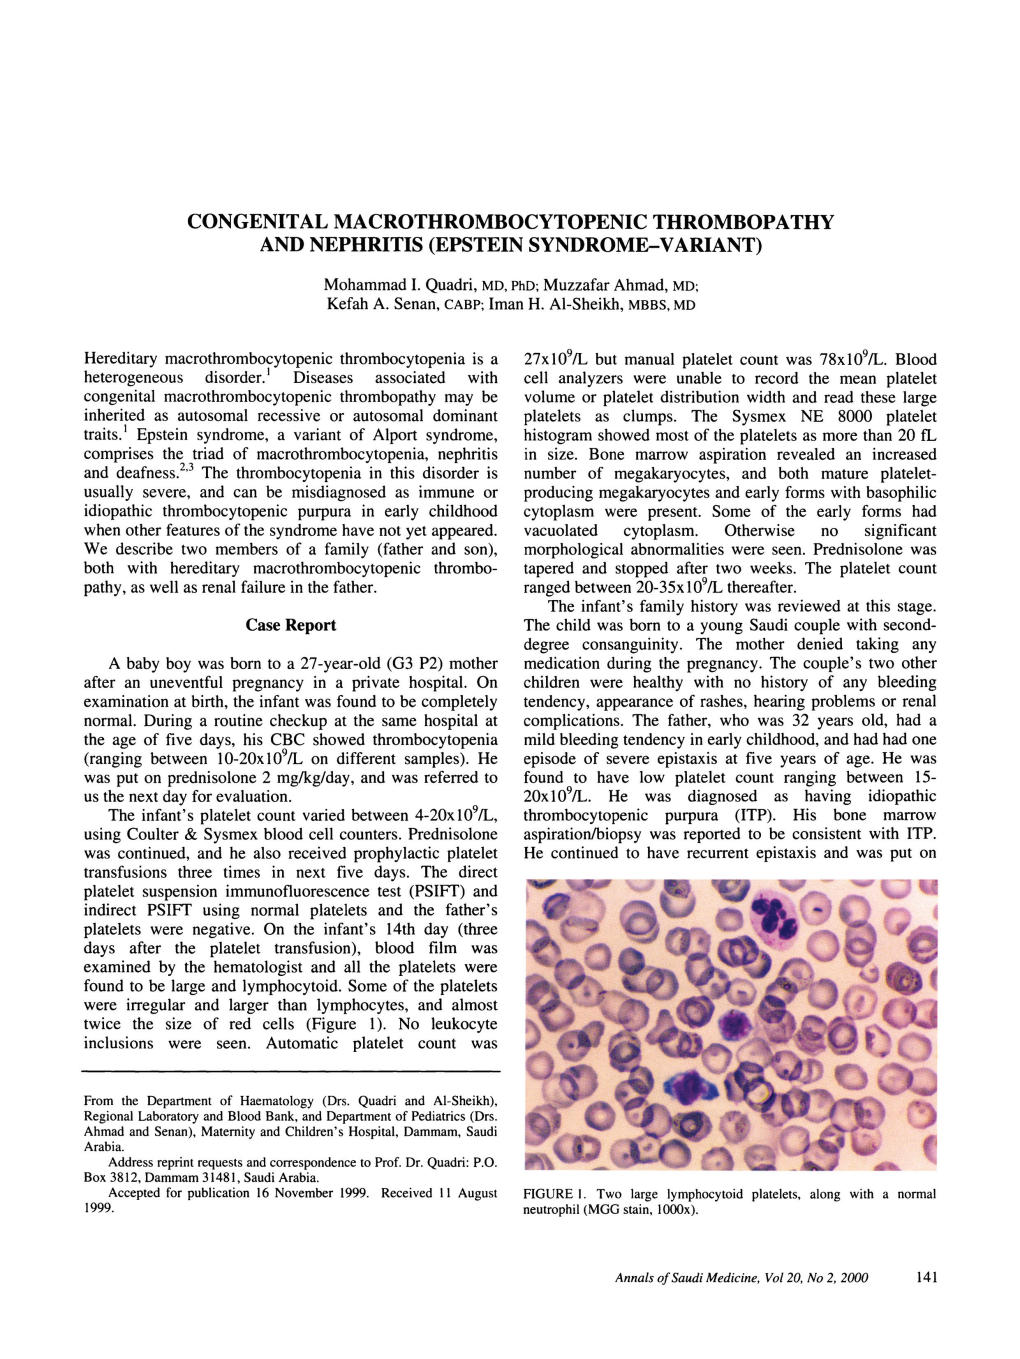 Congenital Macrothrombocytopenic Thrombopathy and Nephritis (Epstein Syndrome-Variant)